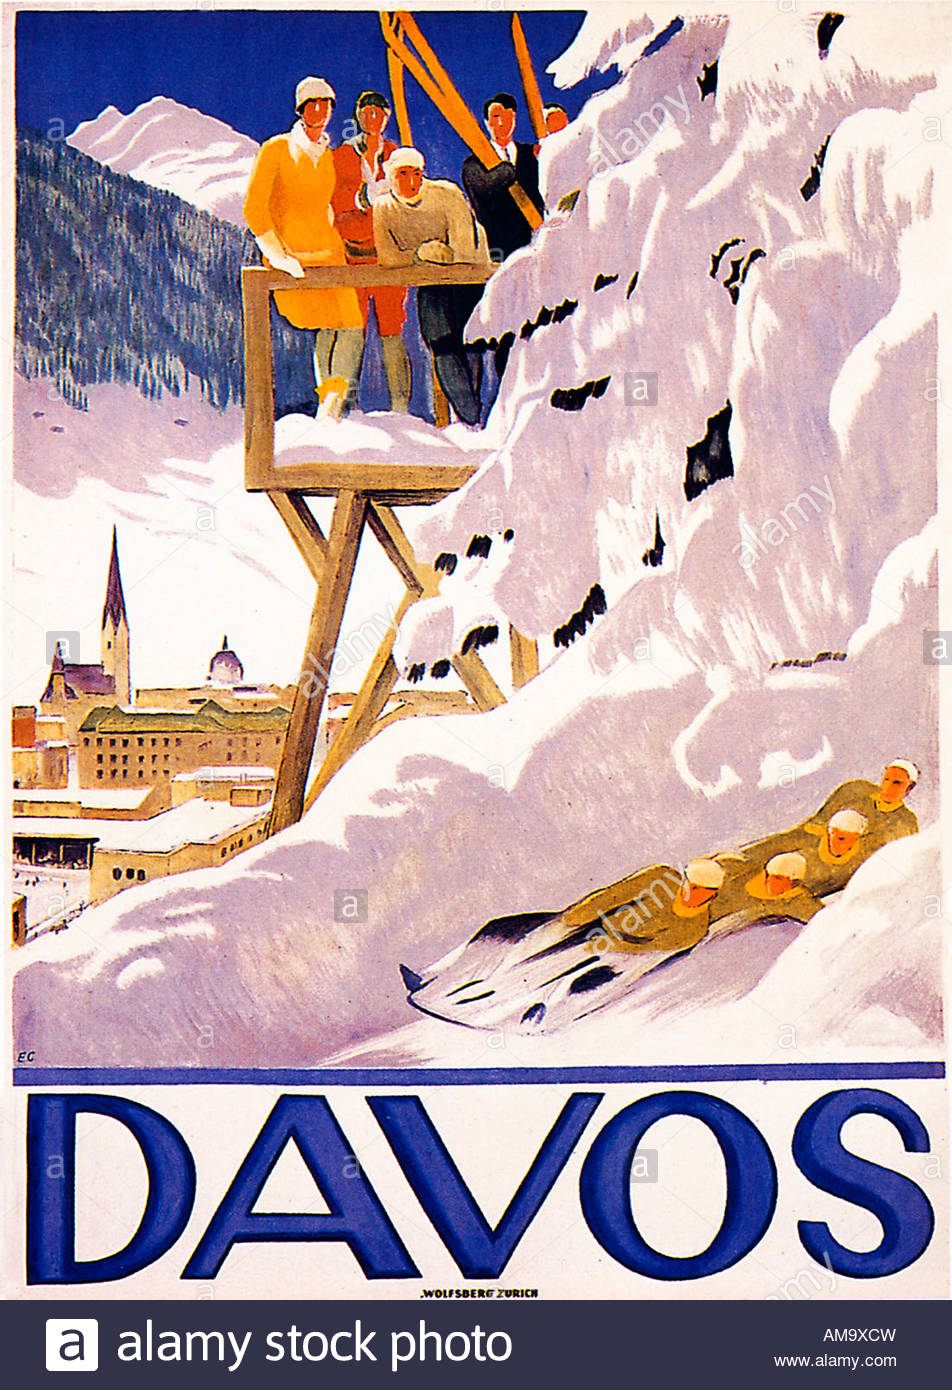 Davos-plakat 1918